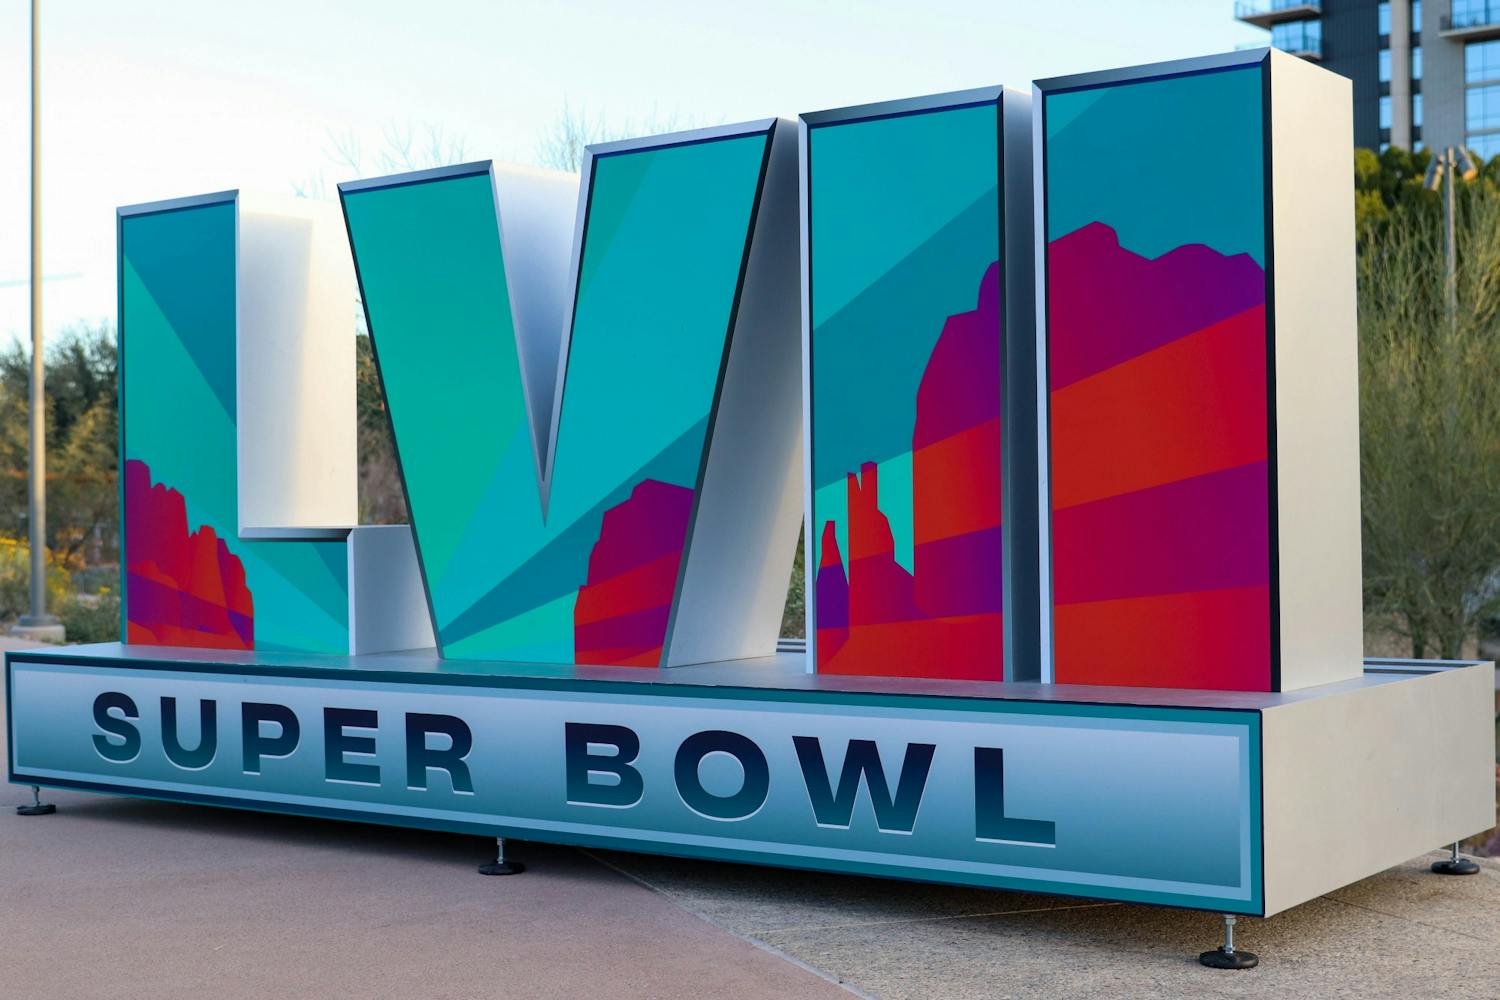 Super Bowl 2023: How NFL picks Super Bowl host cities